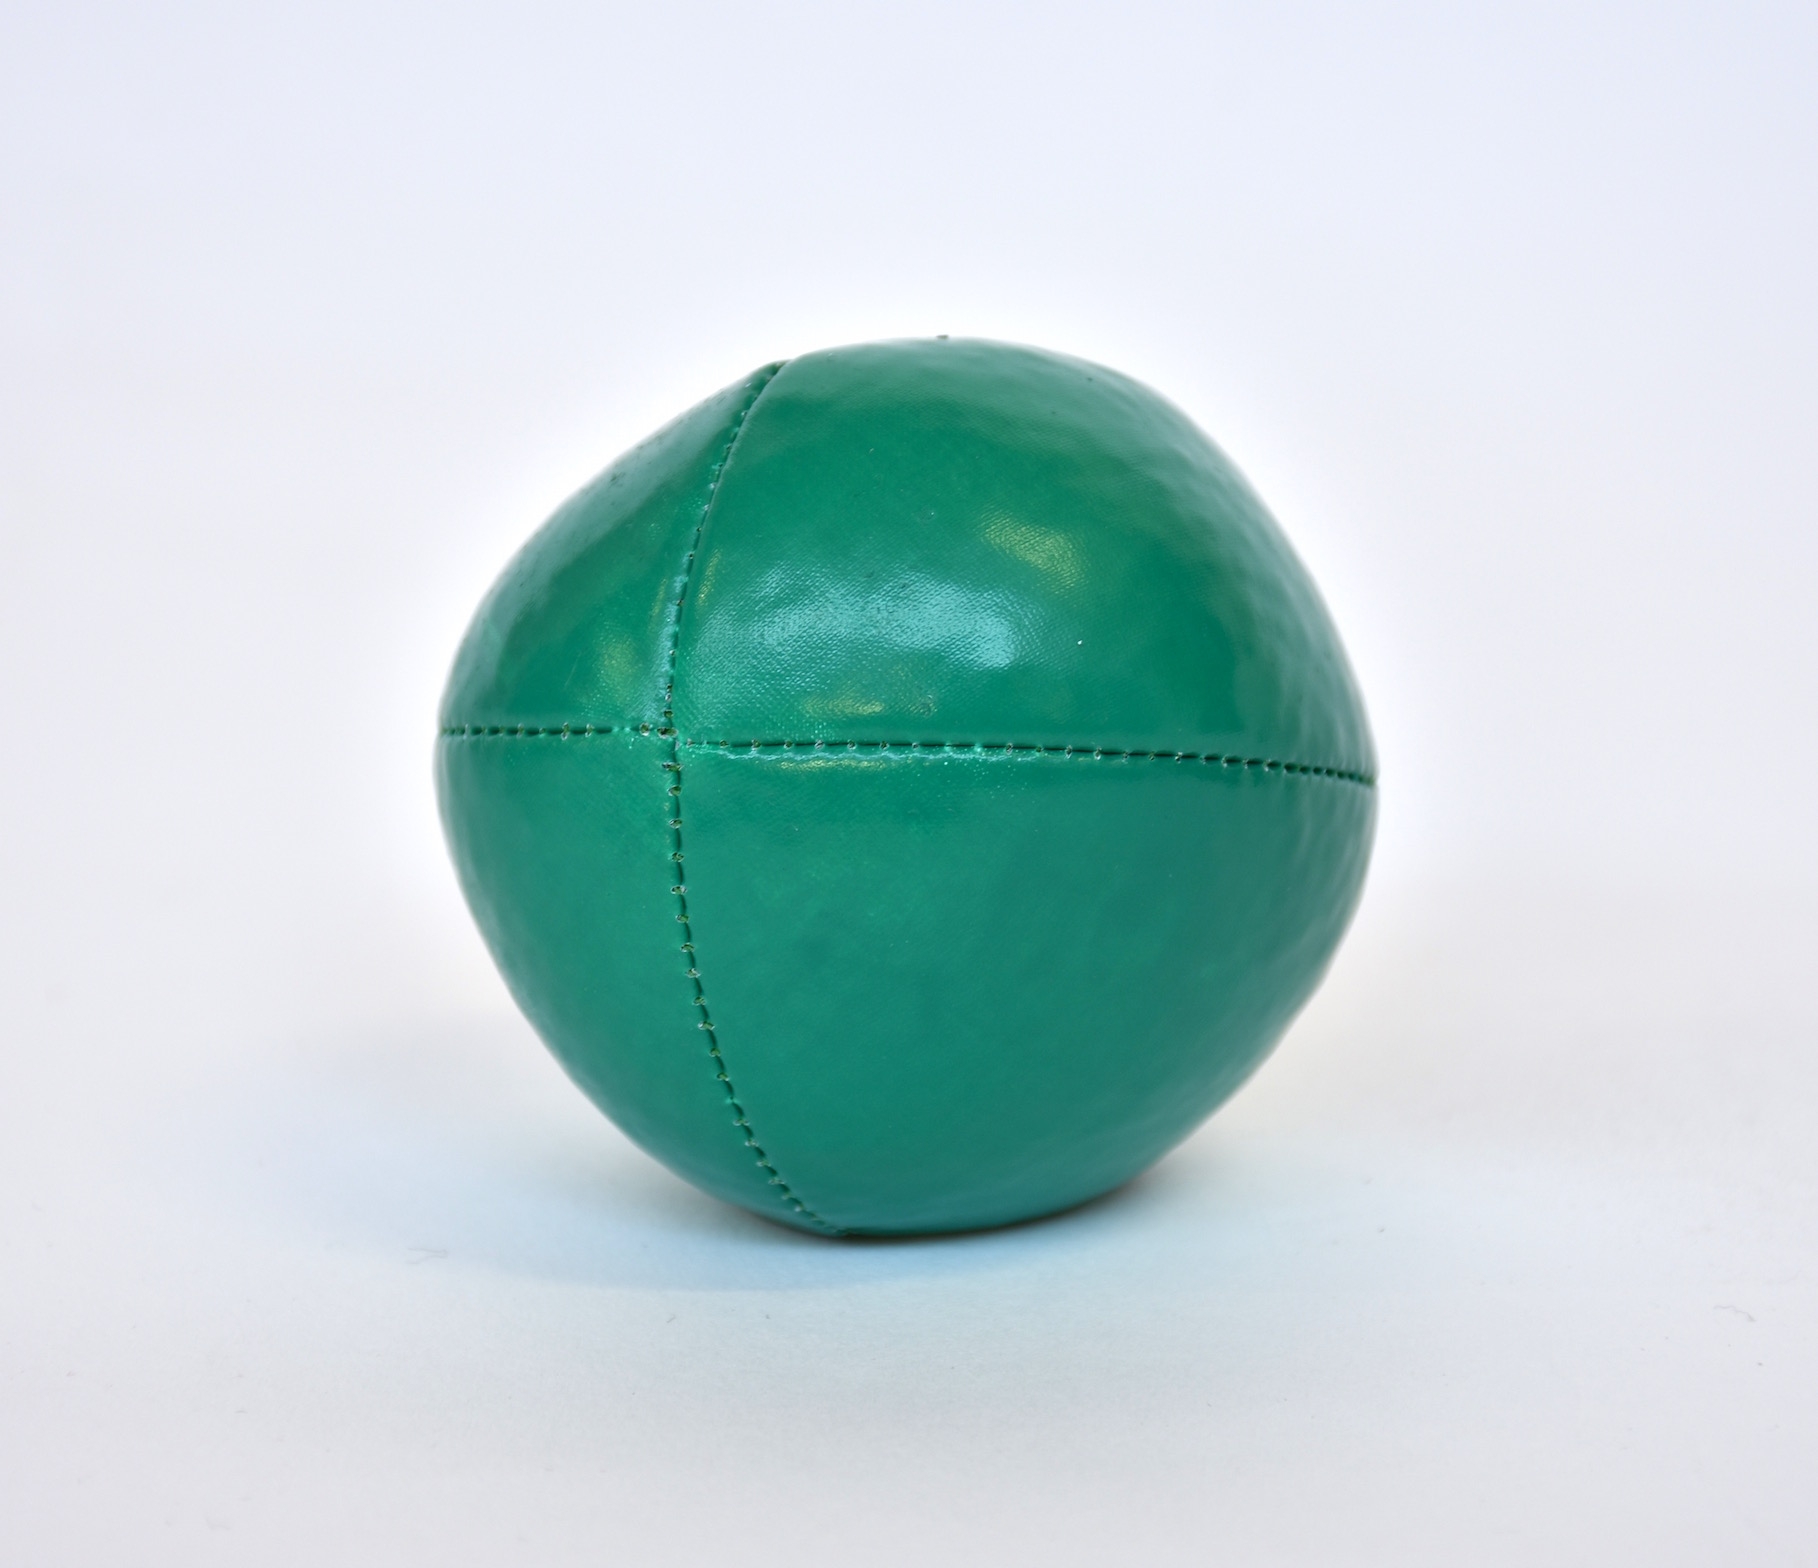 Softball 130g green